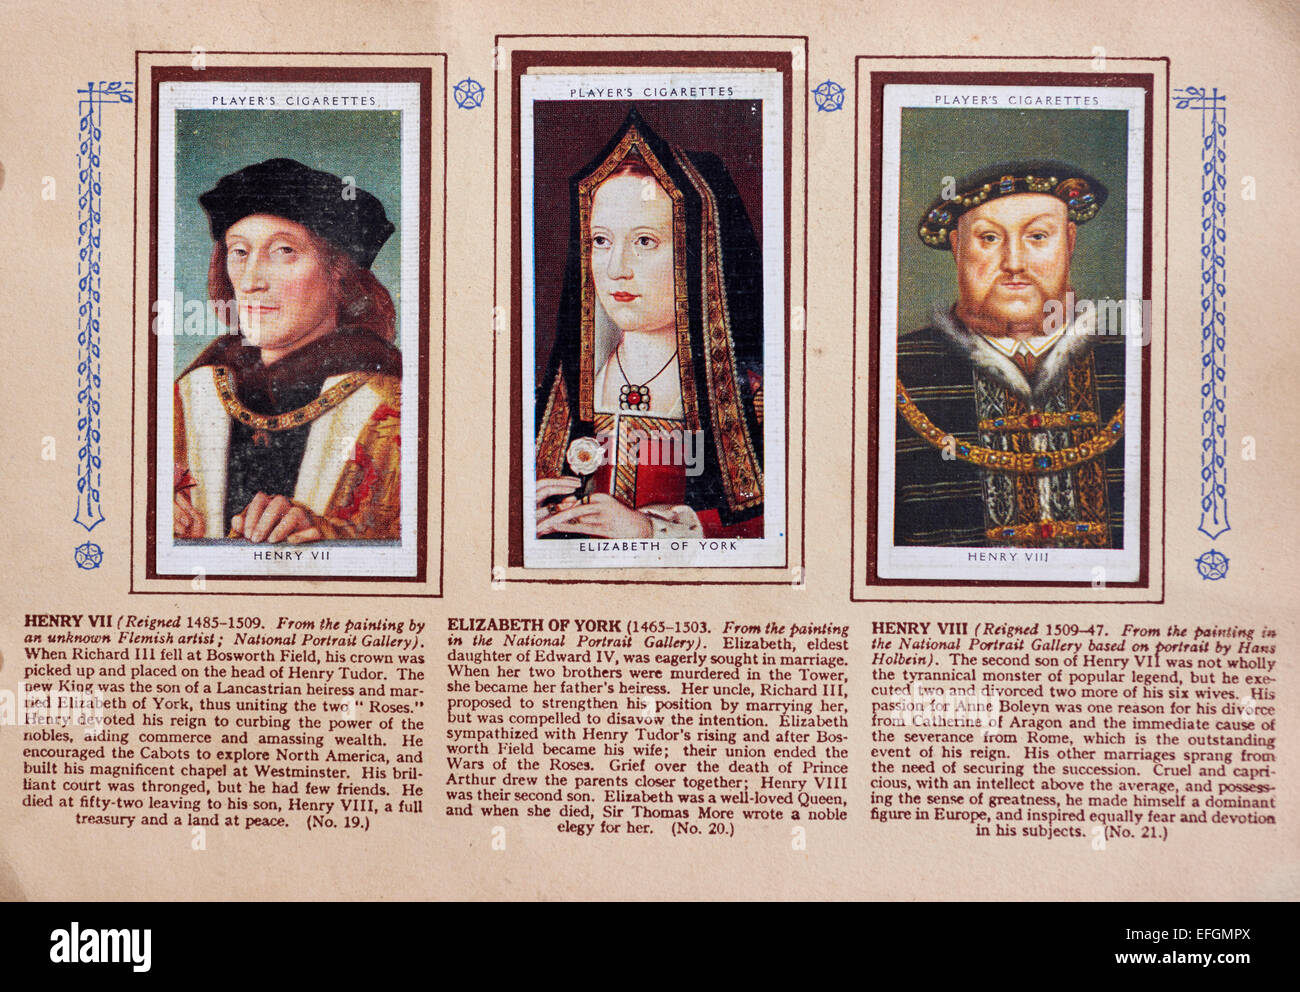 Cartes de cigarettes, les rois et reines d'Angleterre, PLAYER'S CIGARETTE, 1066-1935 Banque D'Images